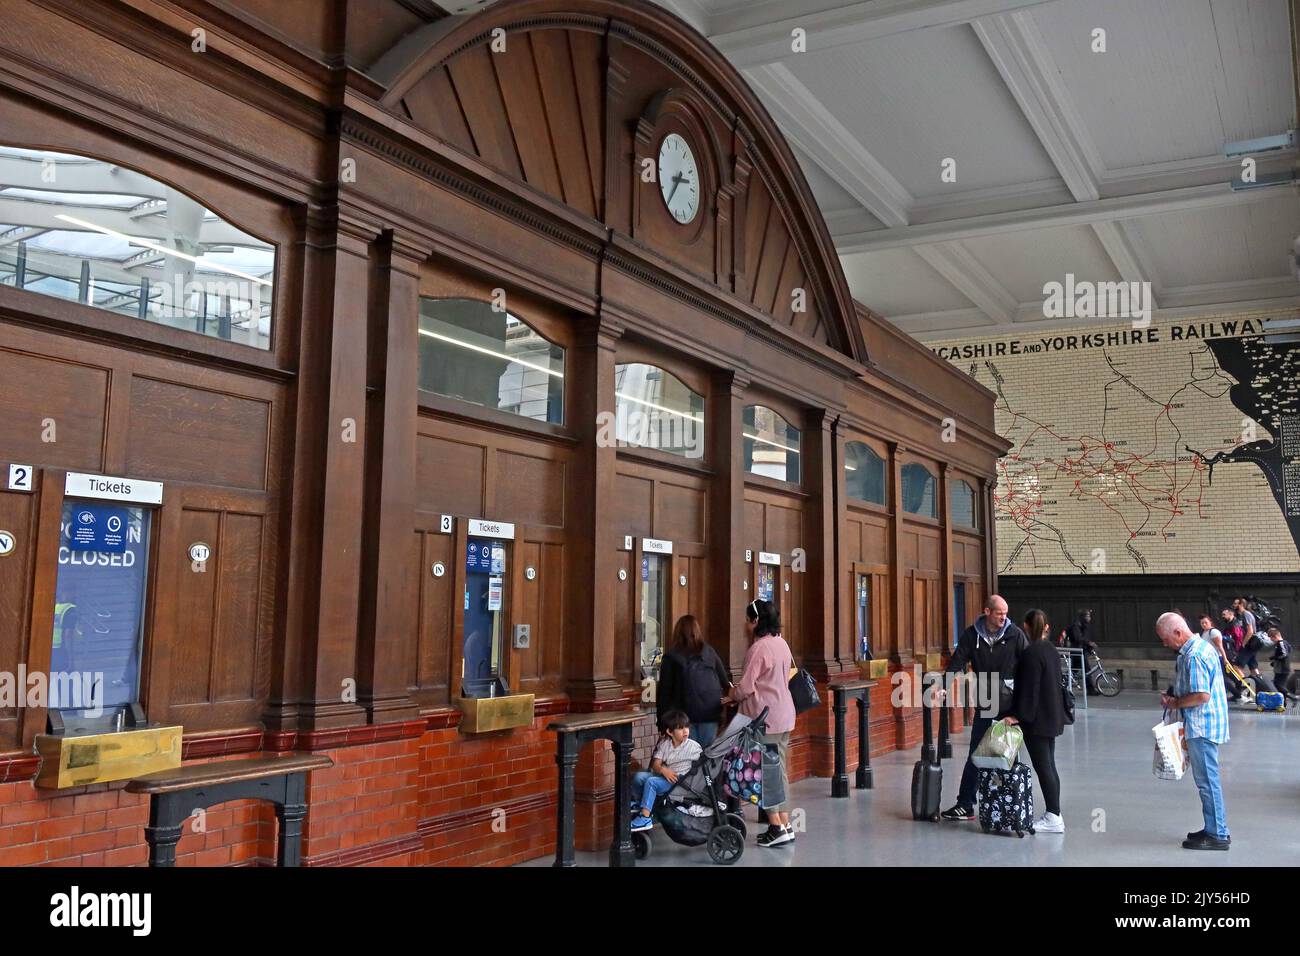 Manchester Victoria railway station interior showing original ticket office windows, Victoria Railway Station, Manchester, England, UK, M3 1WY Stock Photo